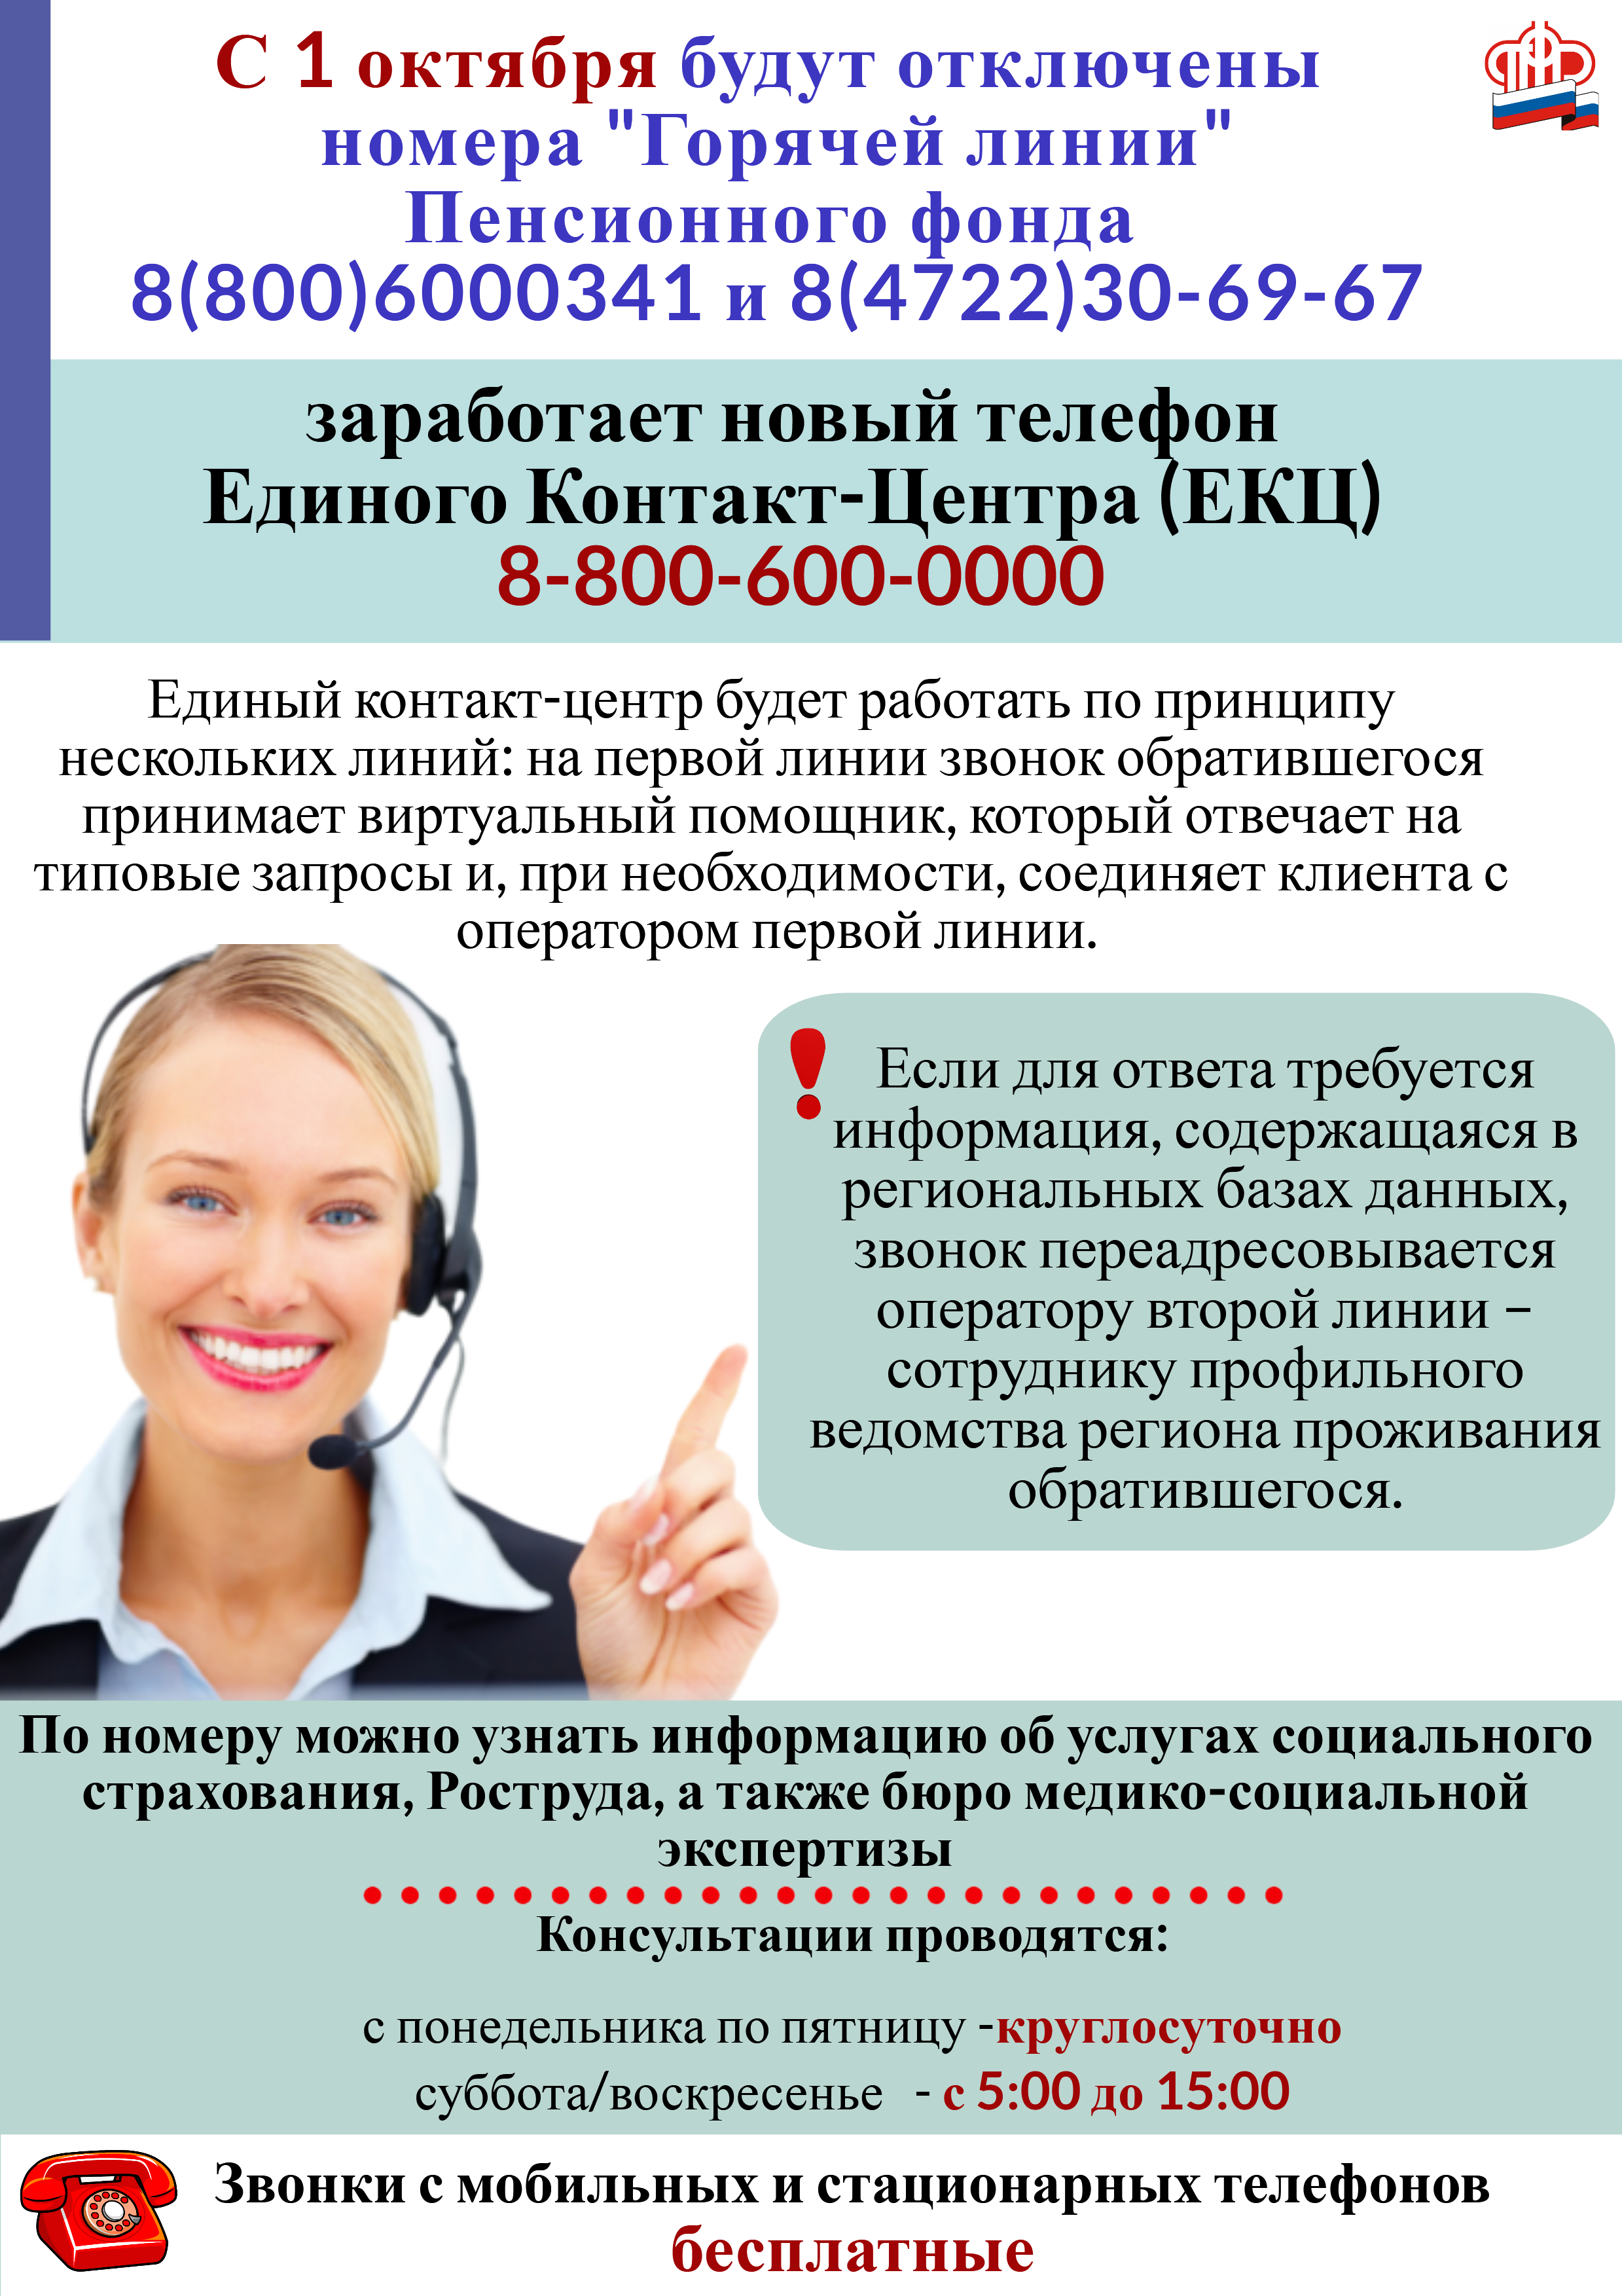 С 1 октября в Белгородской области заработает телефон Единого Контакт-Центра (ЕКЦ) Пенсионного фонда по Белгородской области.